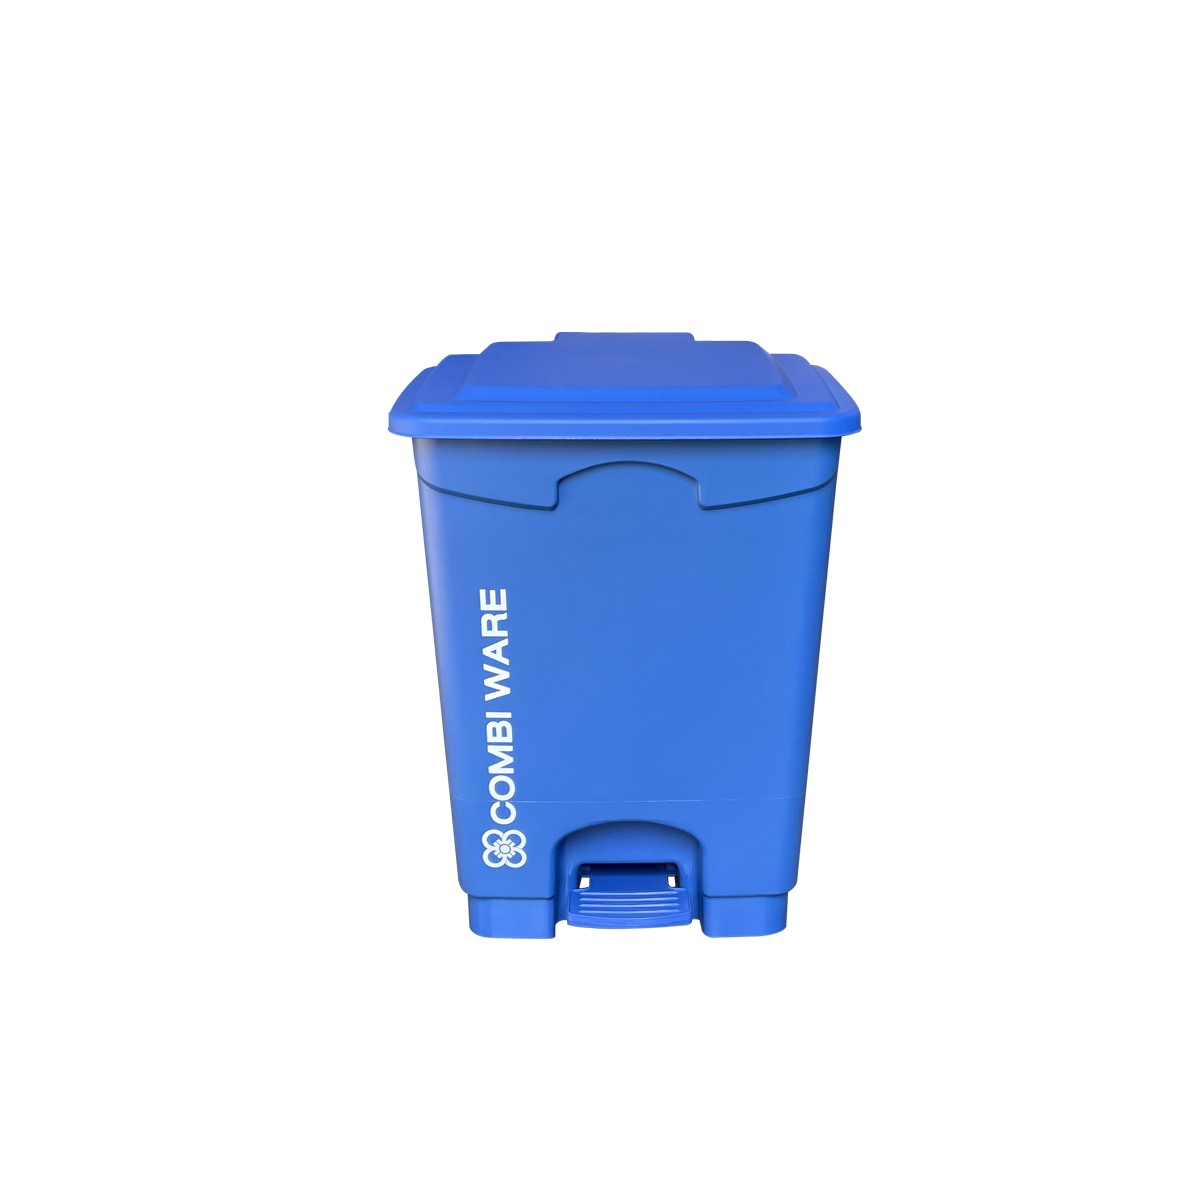 ถังขยะพลาสติก ขนาด 20 ลิตร แบบมีเท้าเหยียบ สีน้ำเงิน